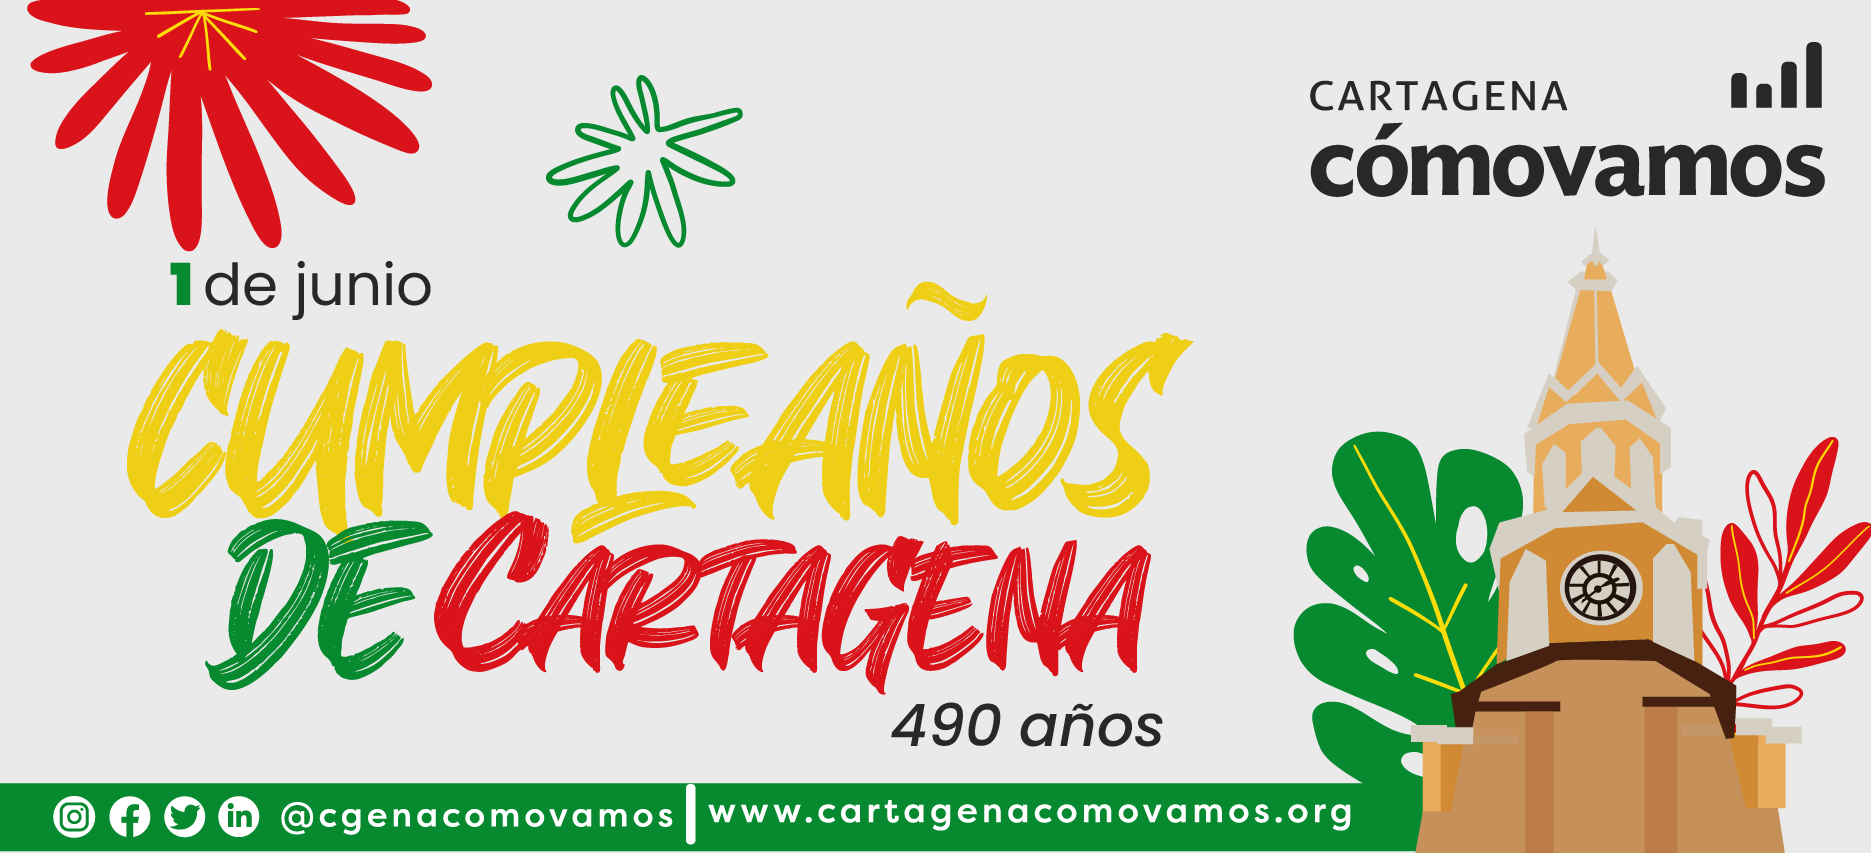 Cumpleanos Cartagena De Indias 1 De Junio Cartagena Como Vamos Portada INF 